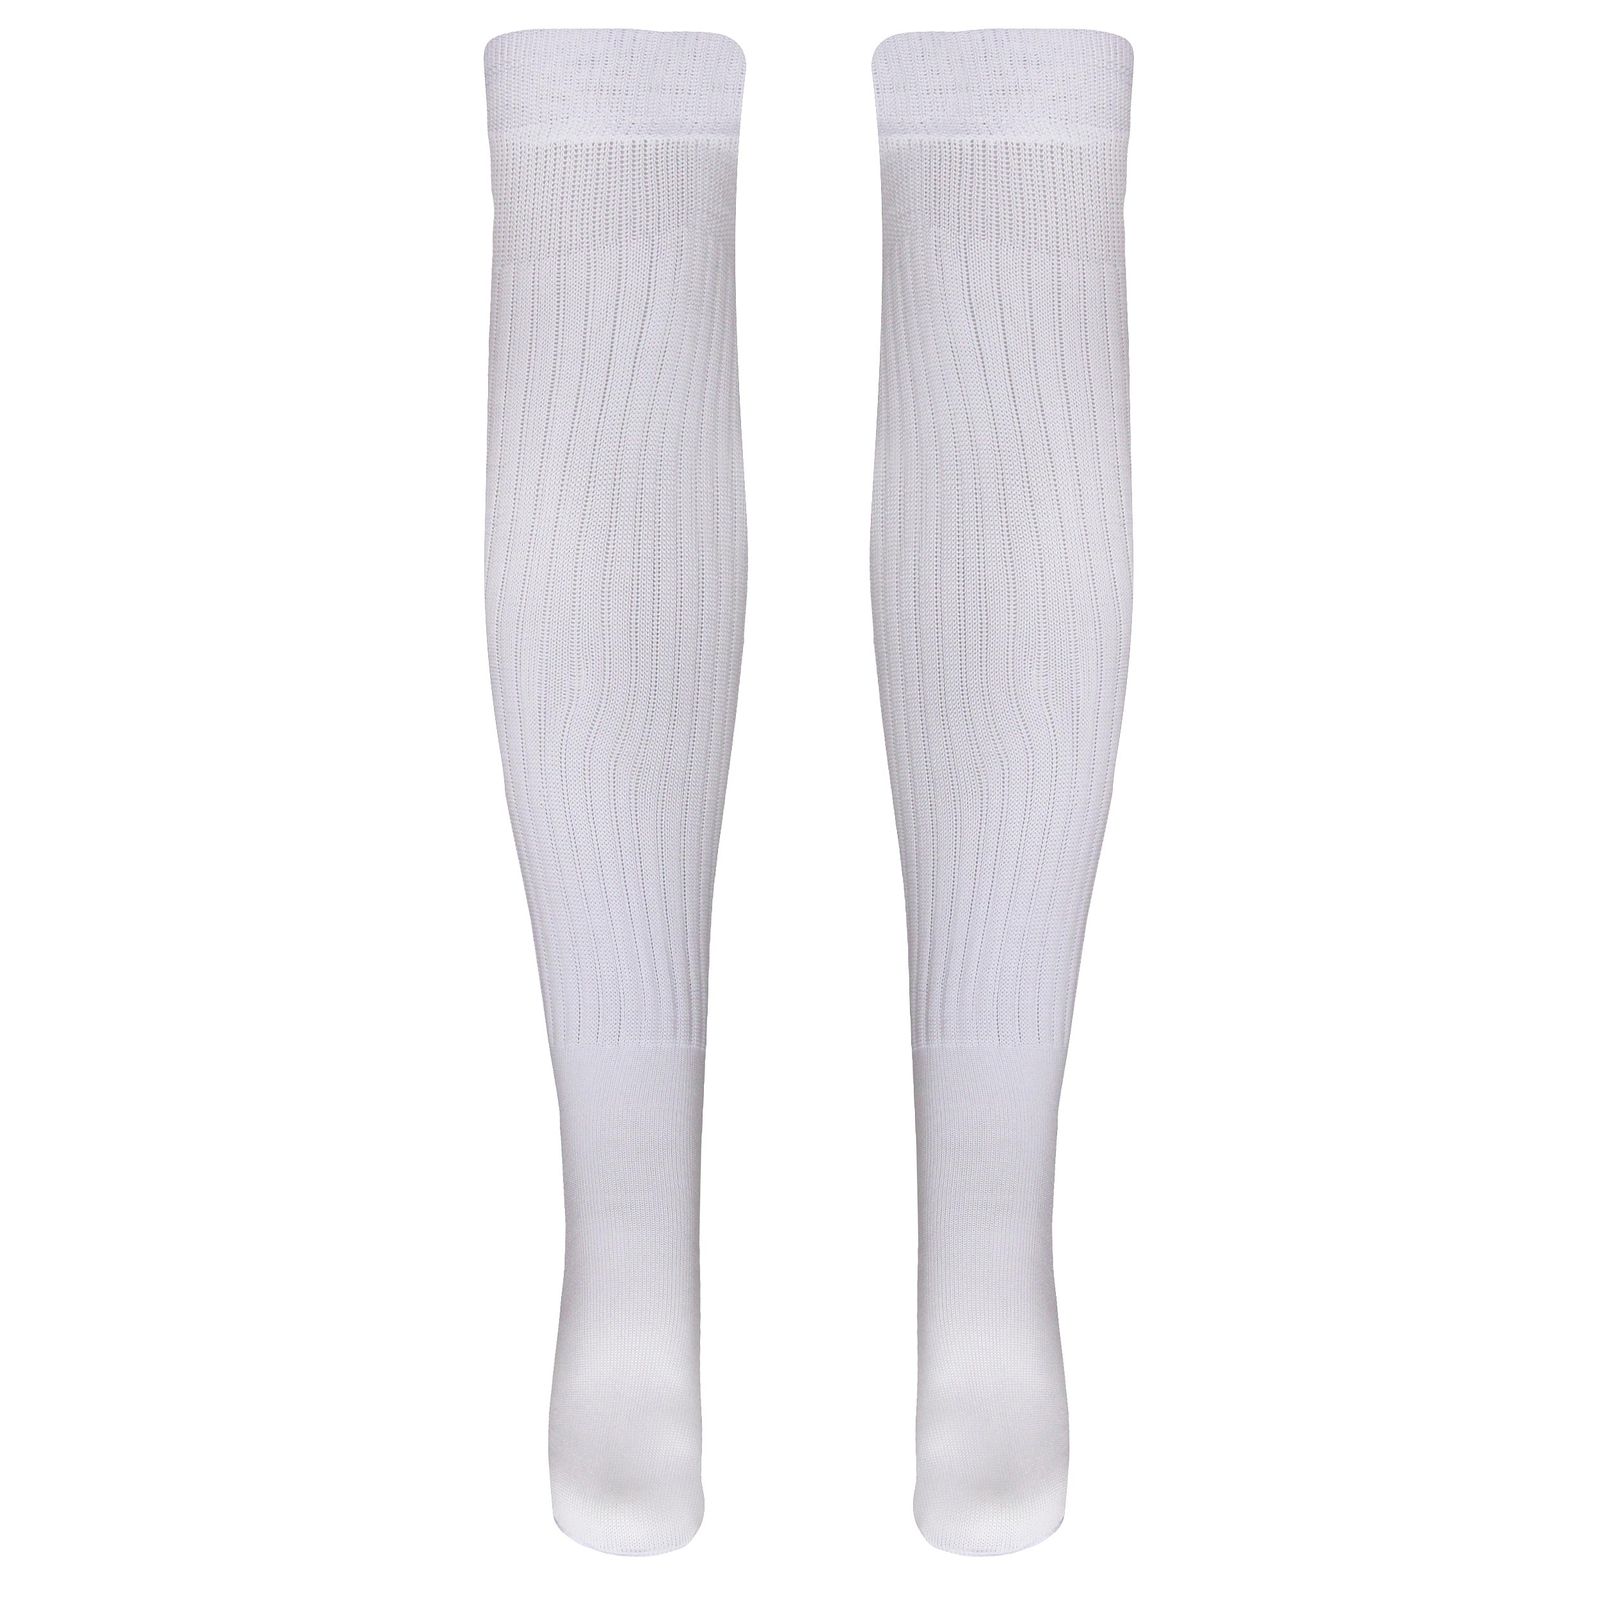 جوراب ورزشی ساق بلند مردانه ماییلدا مدل 4185 رنگ سفید -  - 2